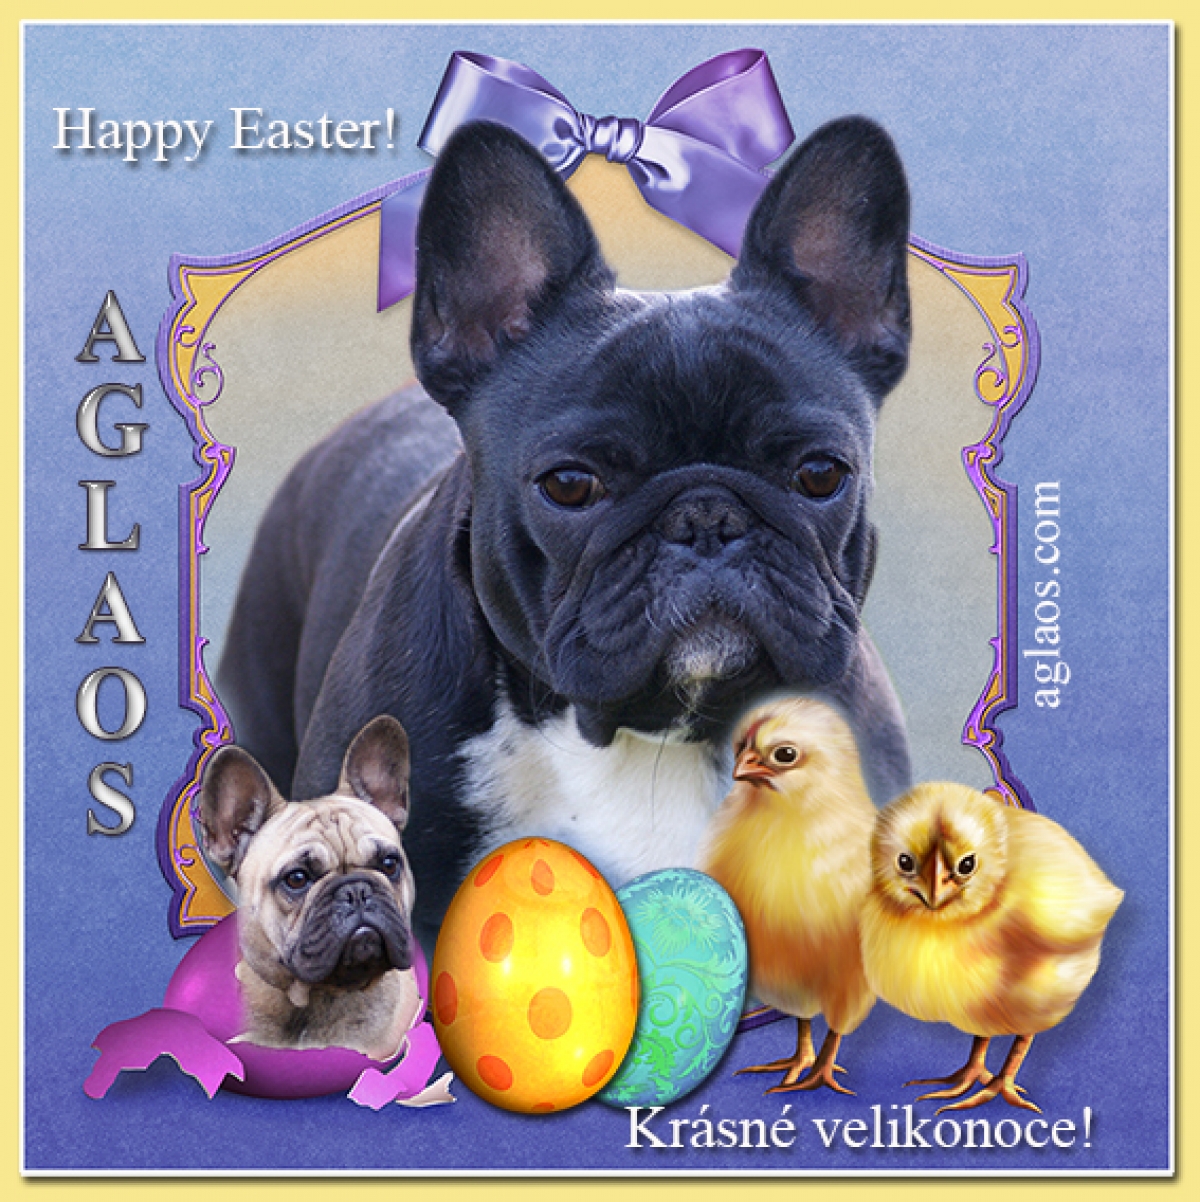 Krásné velikonoce - Happy Easter - Pogodnych swiat wielkanocnych!